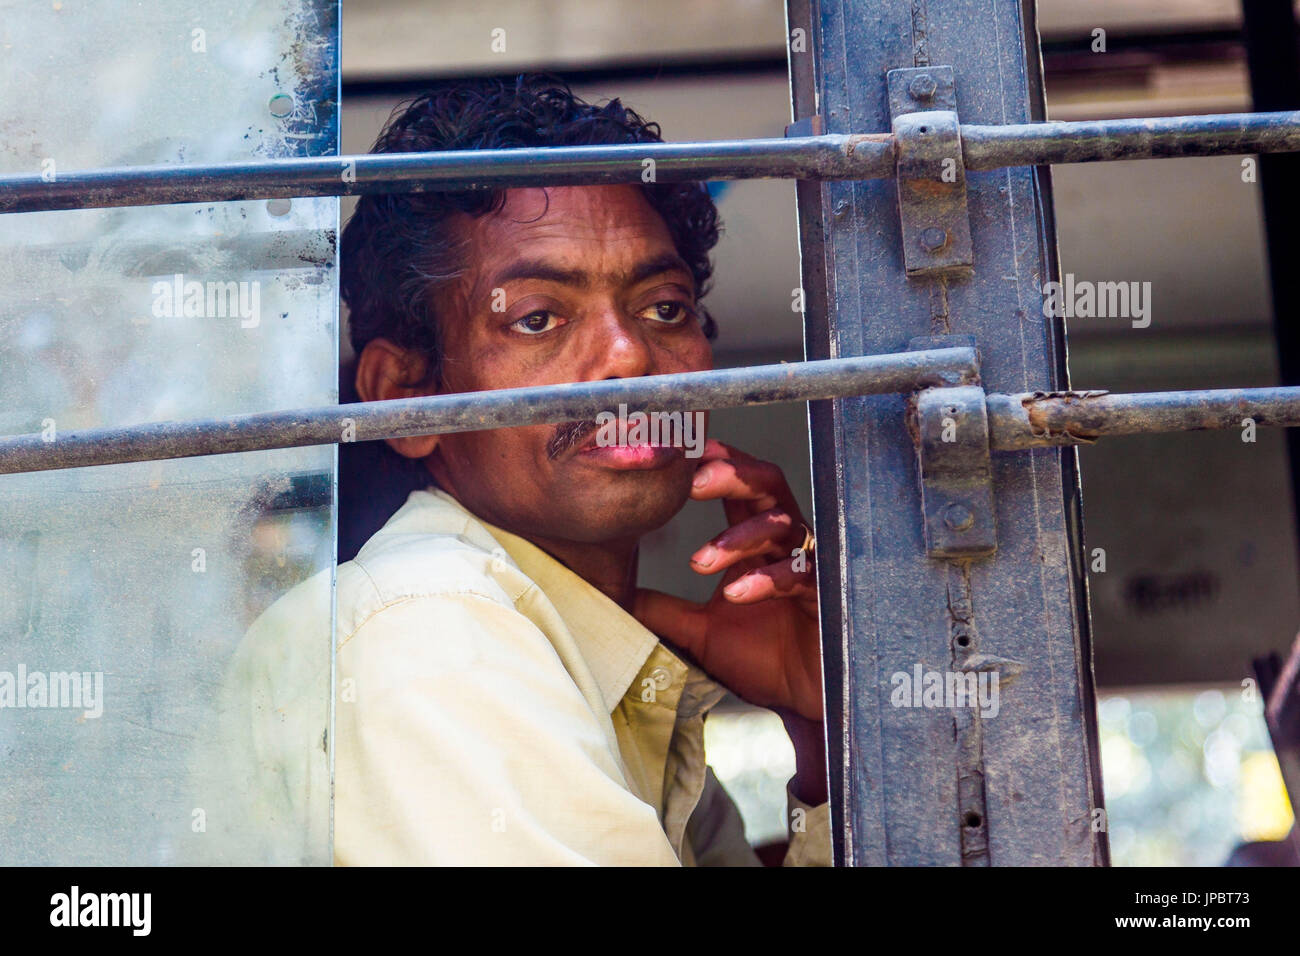 India, Delhi, Uomo cerca attraverso la finestra del bus Foto Stock